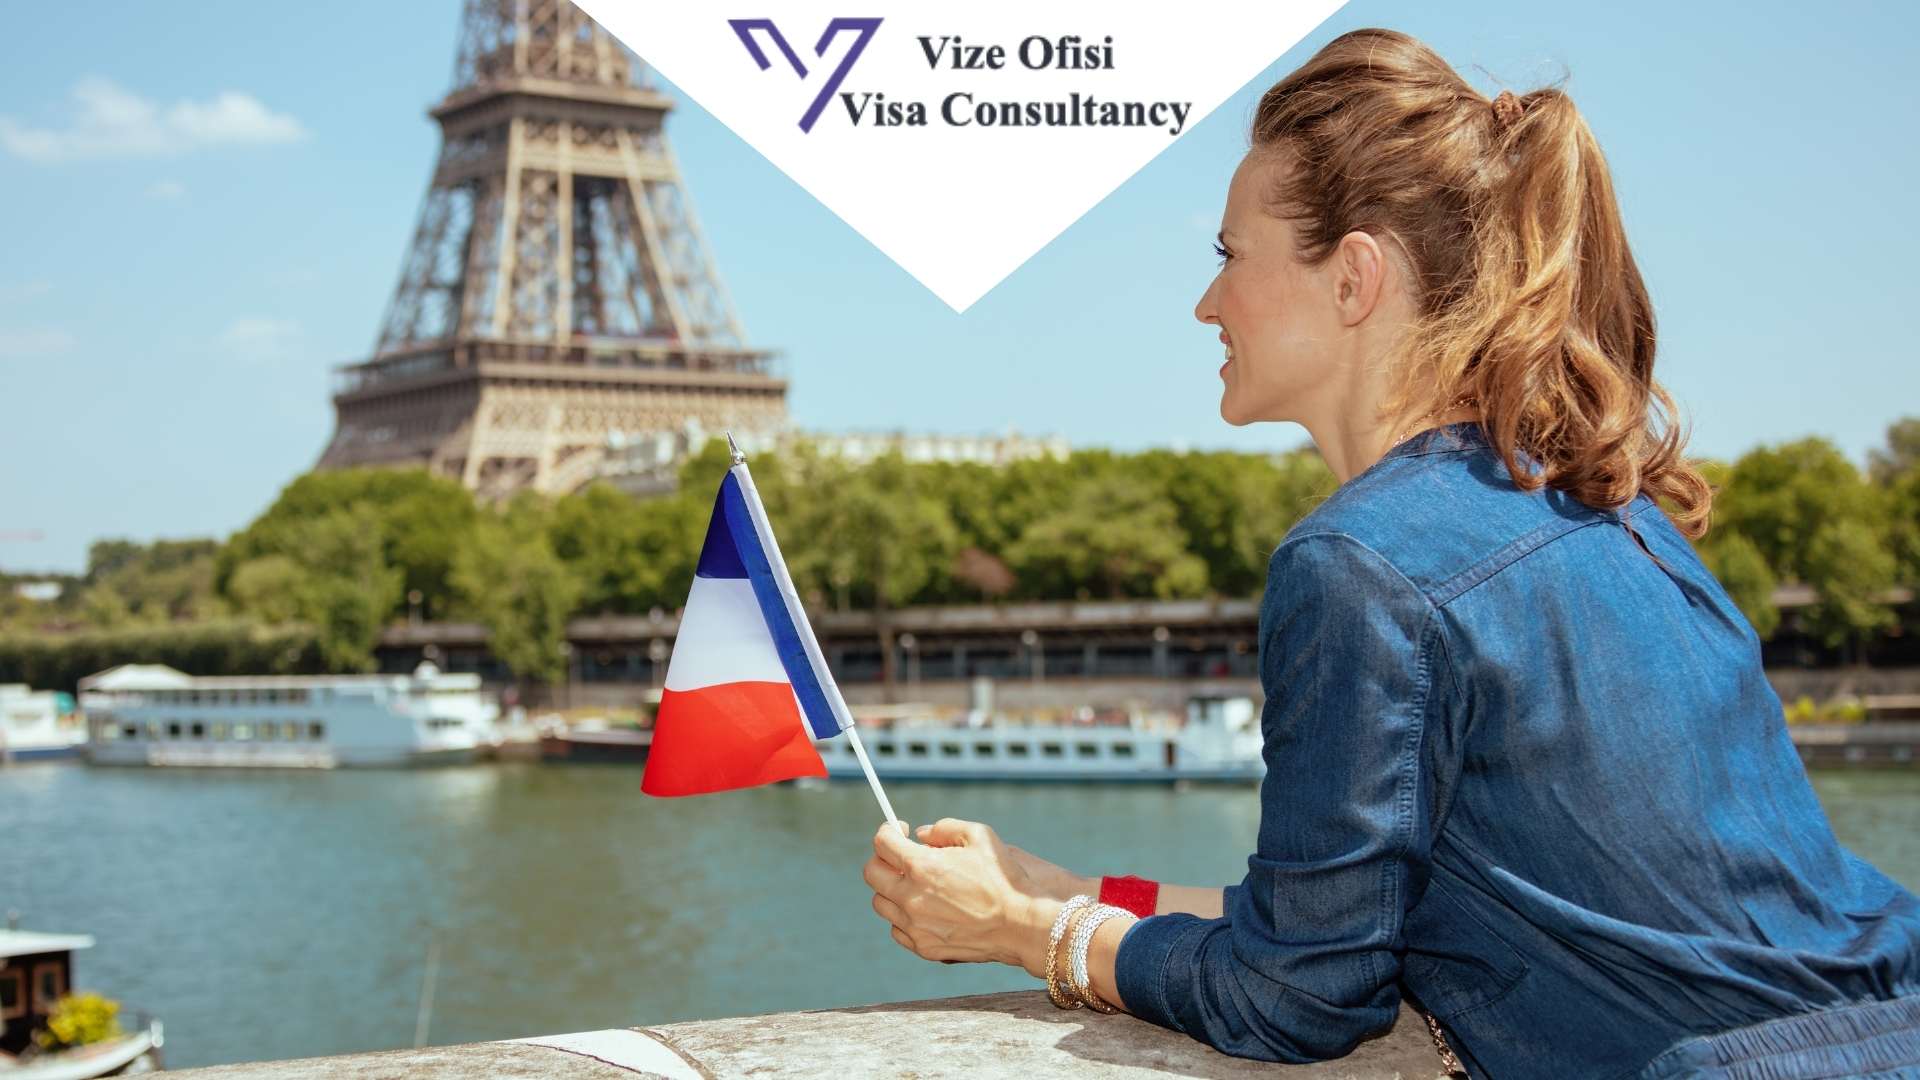 Fransa Aile ve Arkadaş Ziyaret Vize Evrakları 2021